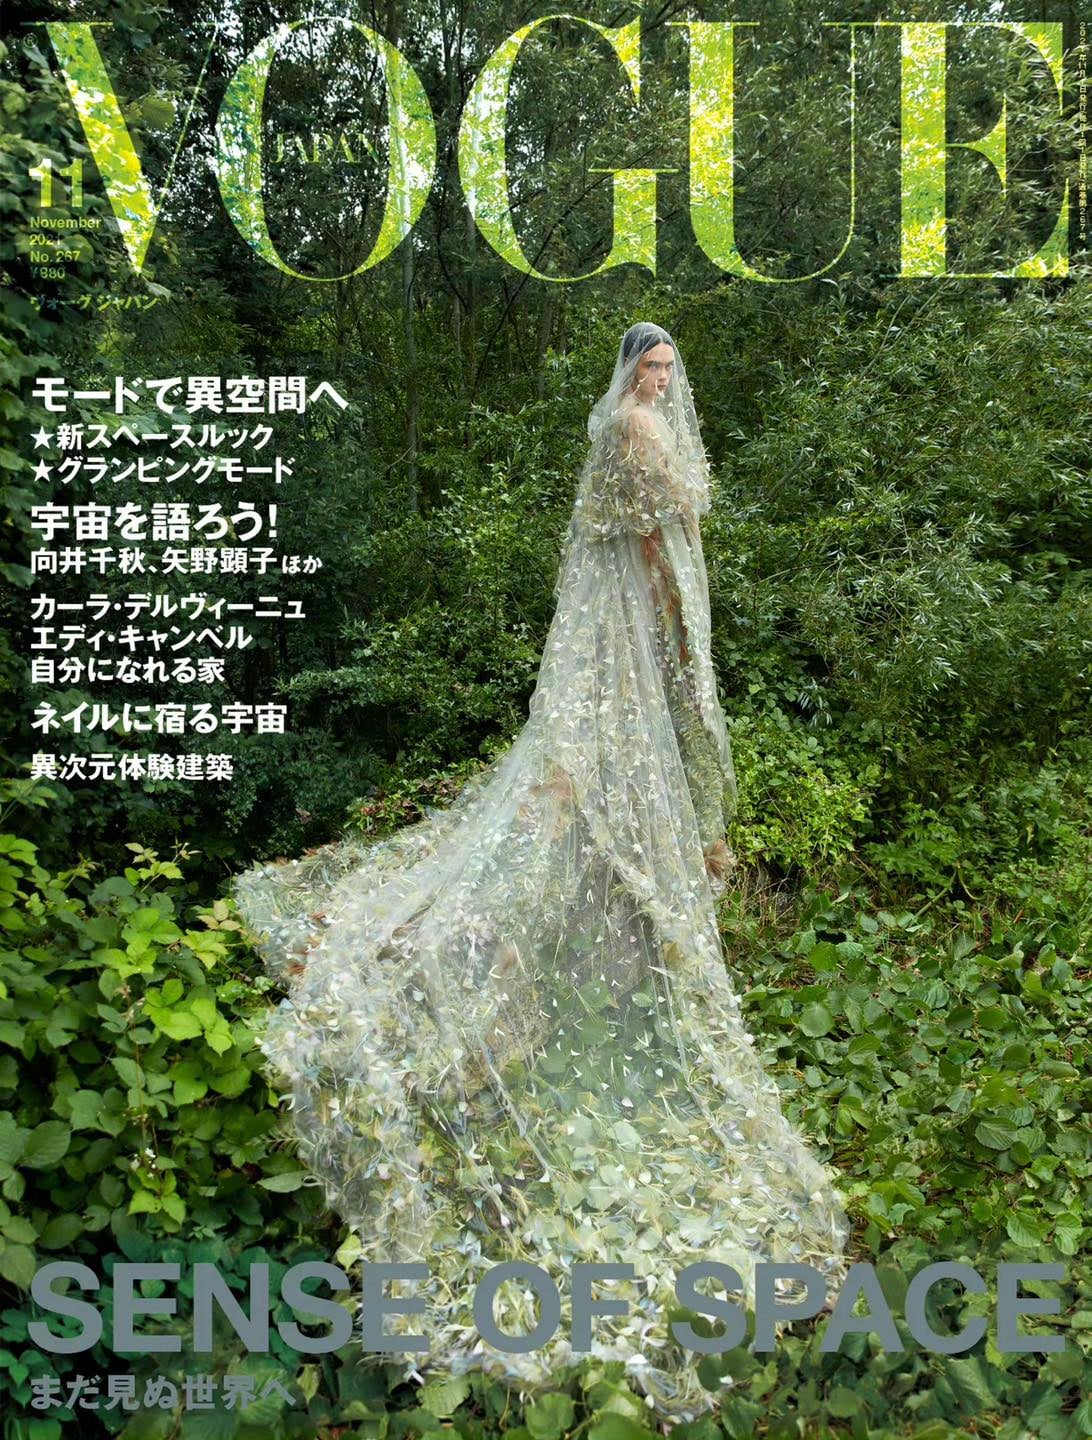 Bộ ảnh lần này của Vogue Nhật Bản do nhiếp ảnh gia Camilla Akrans bấm máy. Sissy Vian làm stylist, Yoann Fernandez tạo mẫu tóc, Peter Philips trang điểm. Siêu mẫu người Anh diện nhiều thiết kế đến từ nhà mốt Dior